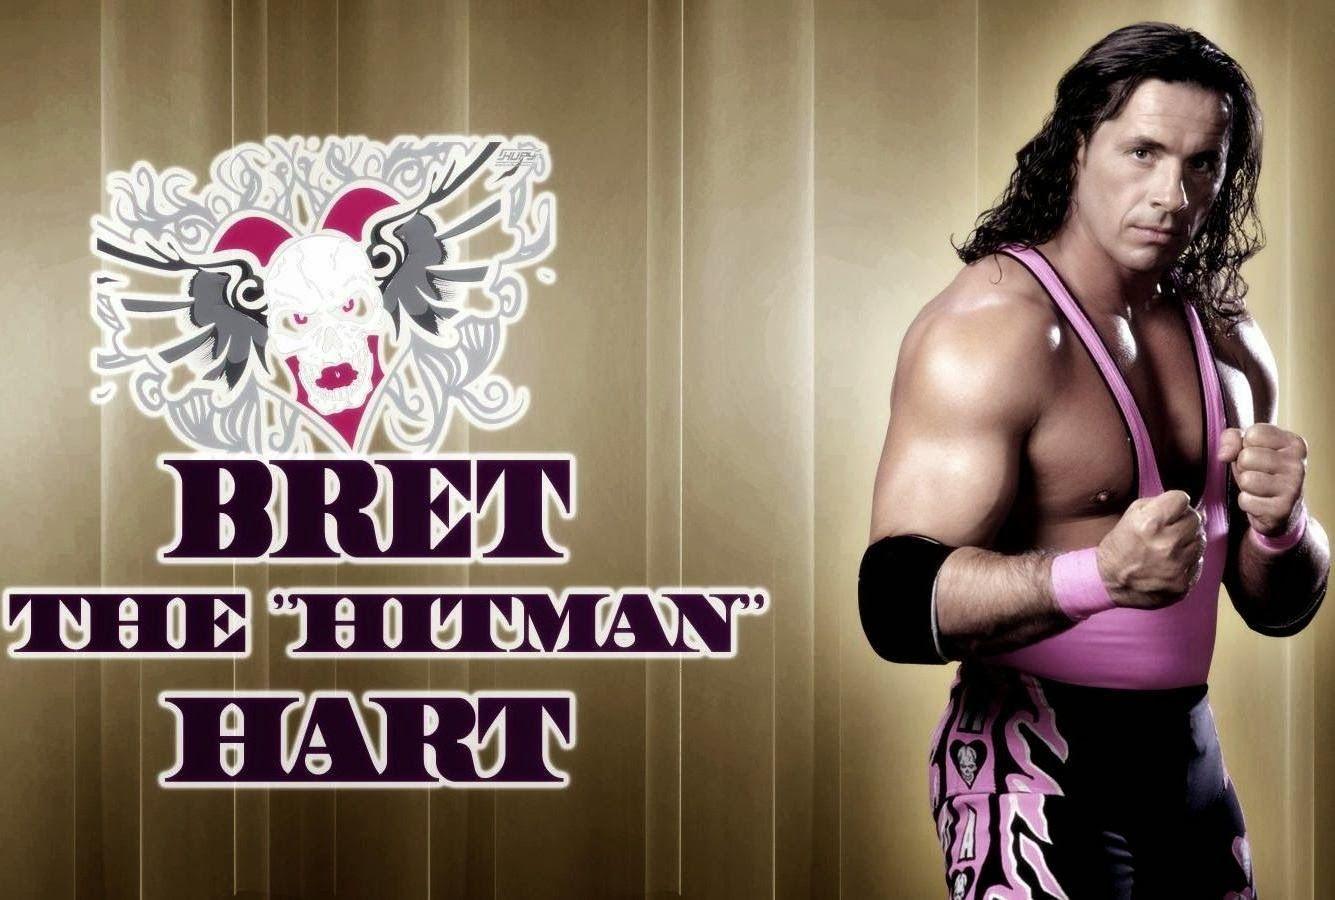 Bret Hart HD Wallpaper Free Download. WWE HD WALLPAPER FREE DOWNLOAD